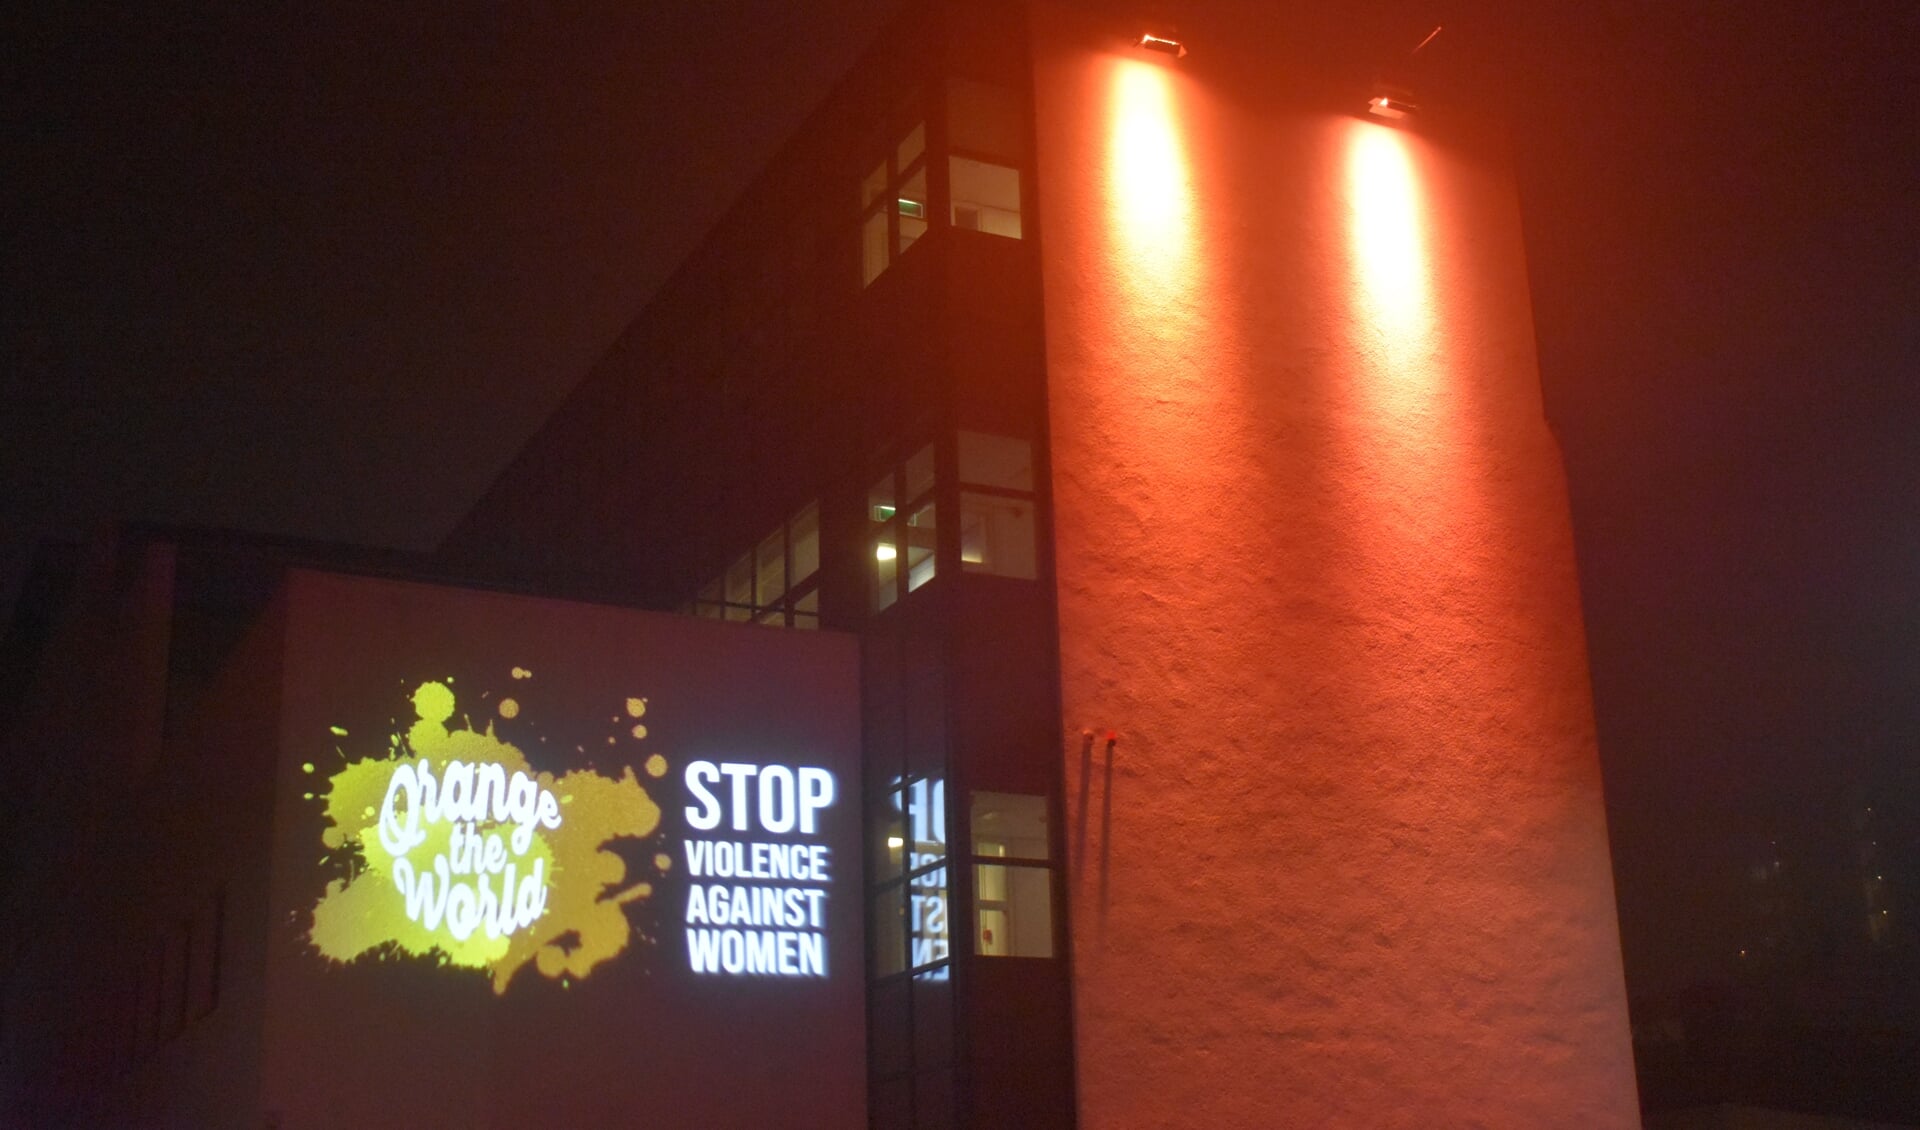 'Orange the world', symbolische actie tegen geweld tegen vrouwen, op het gemeentehuis in Drachten. Een kerntaak of niet?